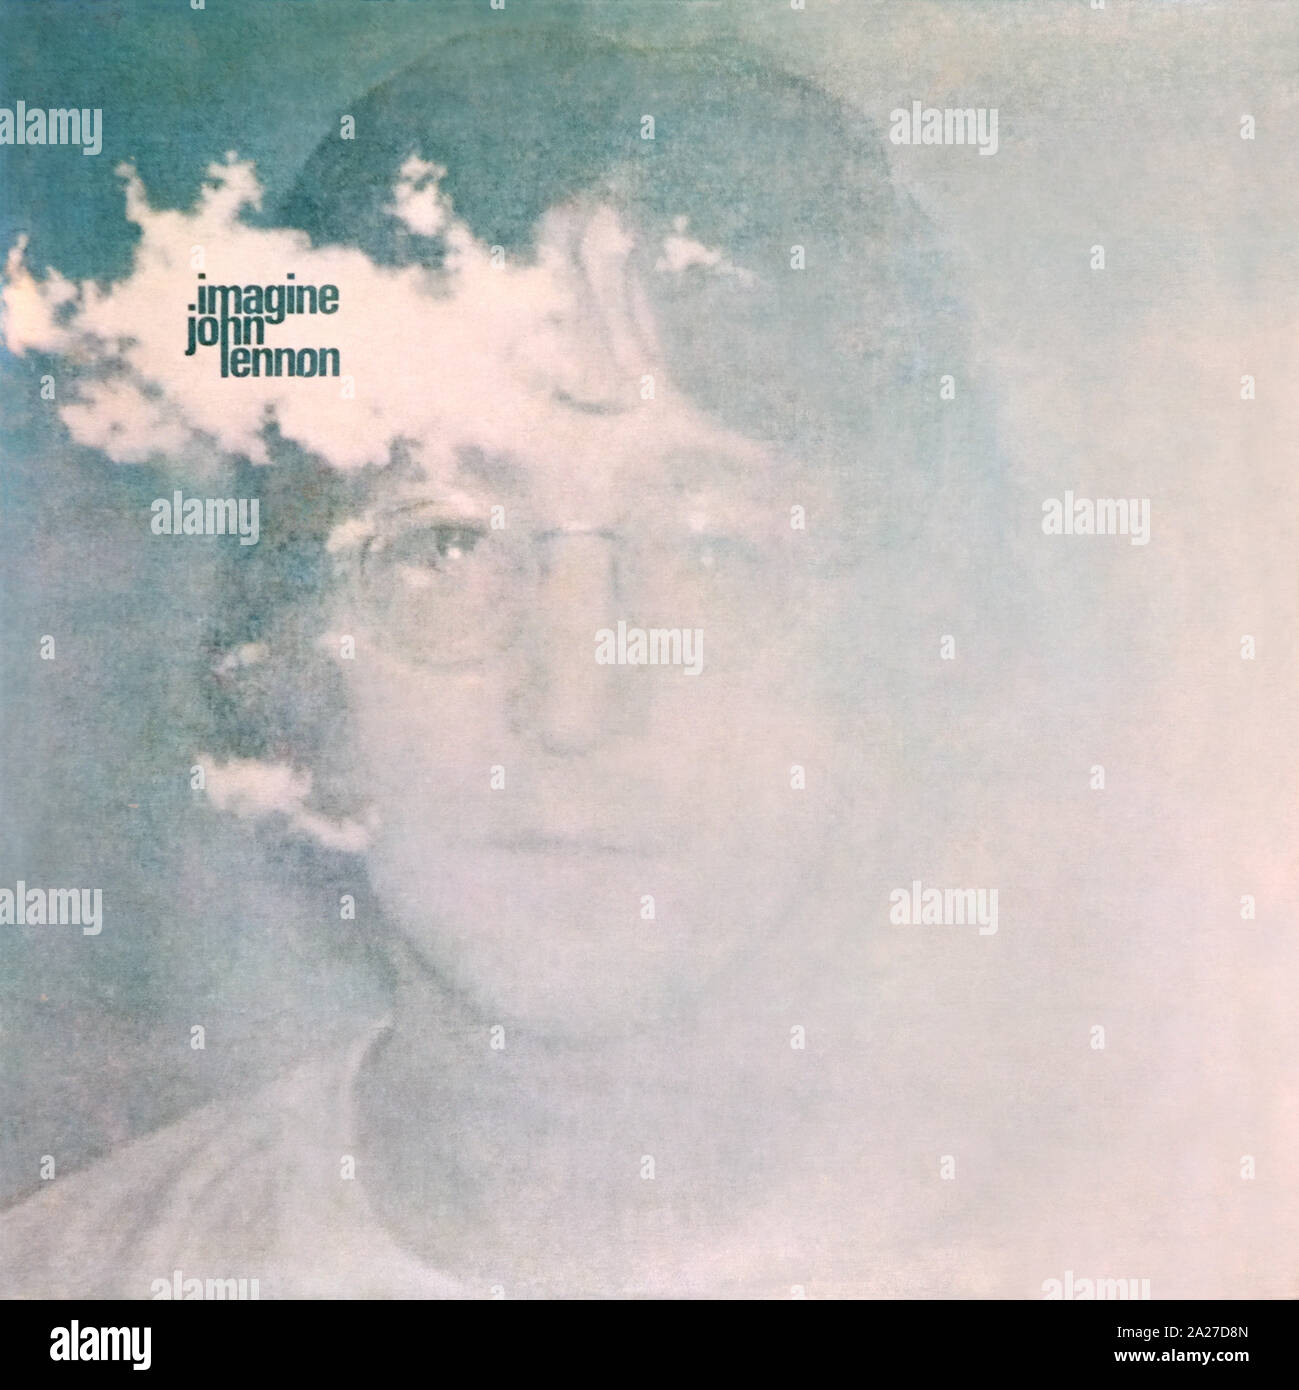 John Lennon - portada original del álbum de vinilo - Imagine - 1971 Foto de stock